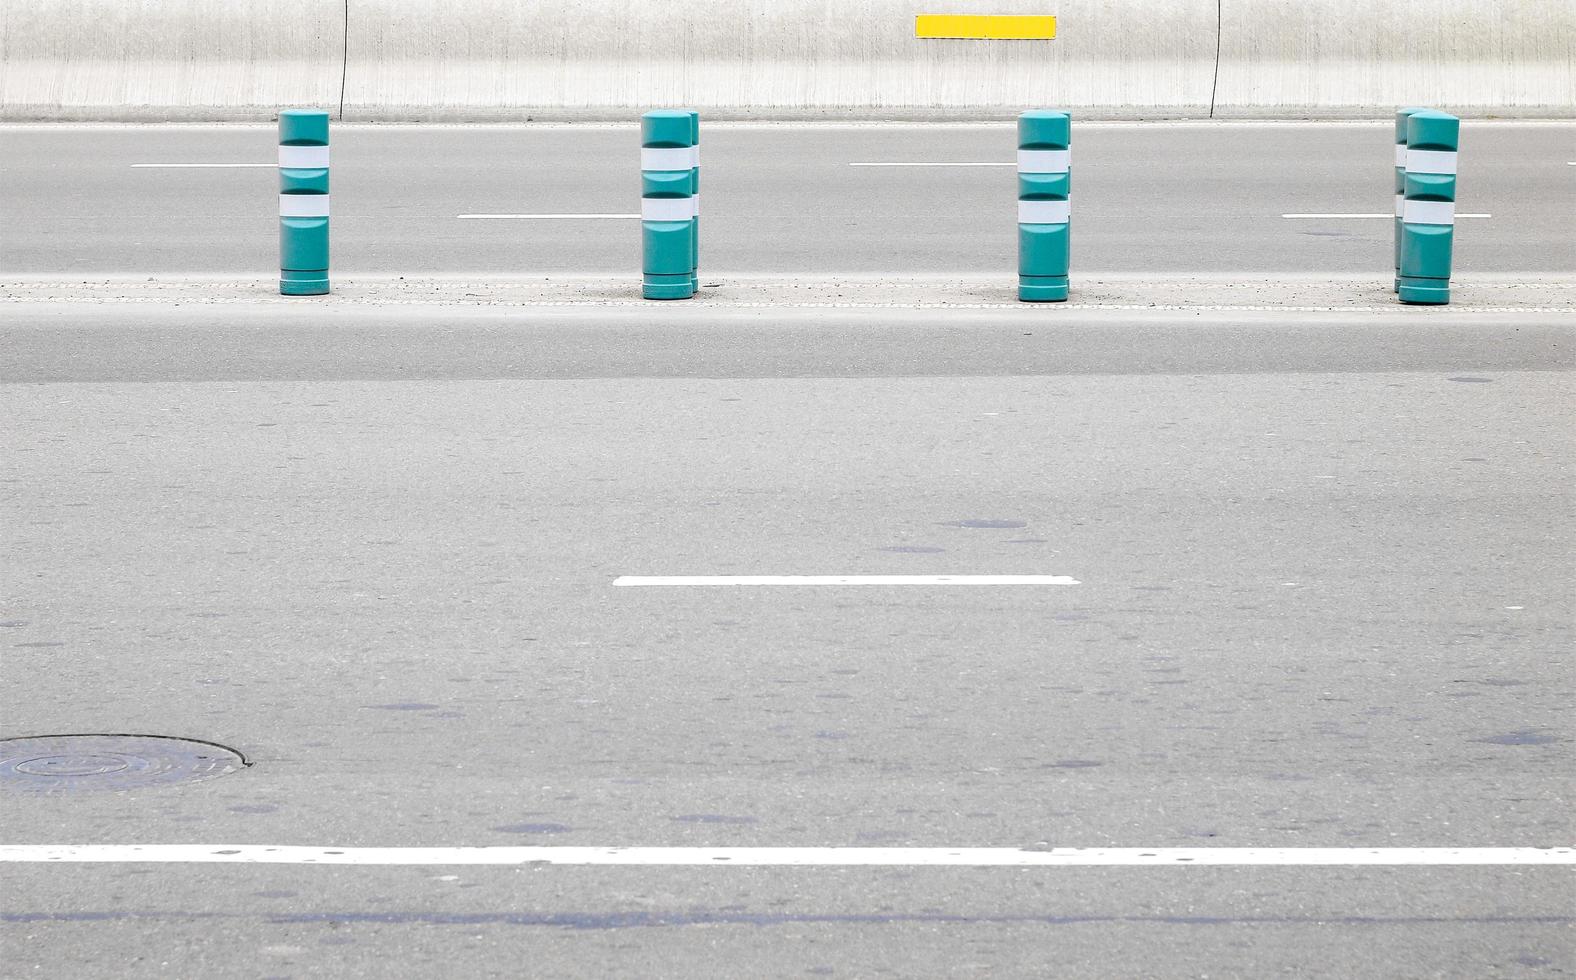 cuatro barreras azules en una carretera foto